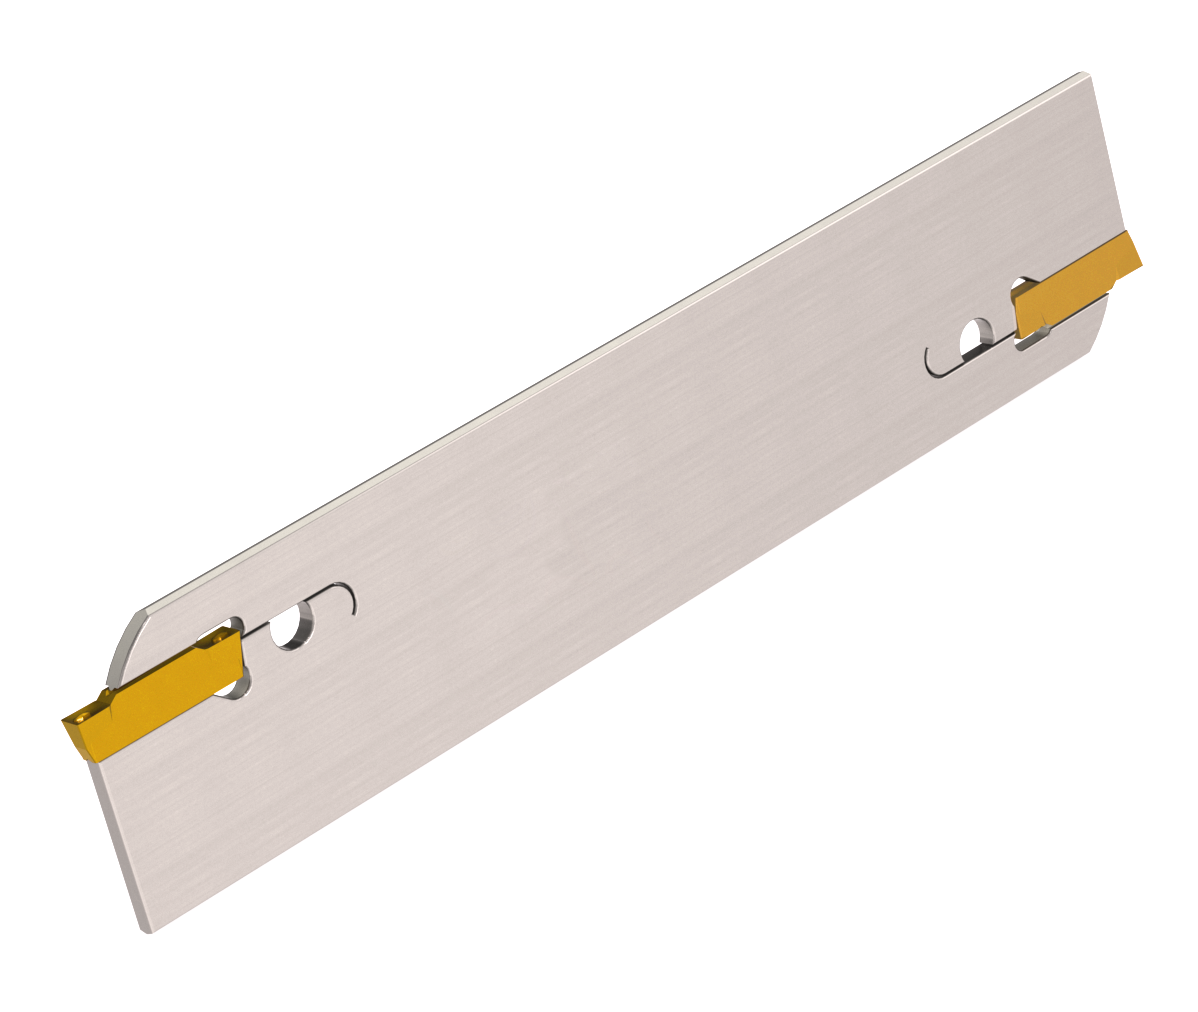 Stechschwert für Stechplatten auf durchsichtigem Hintergrund. In dem Stechschwert sind zwei gelbe Wendeplatten eingelassen.